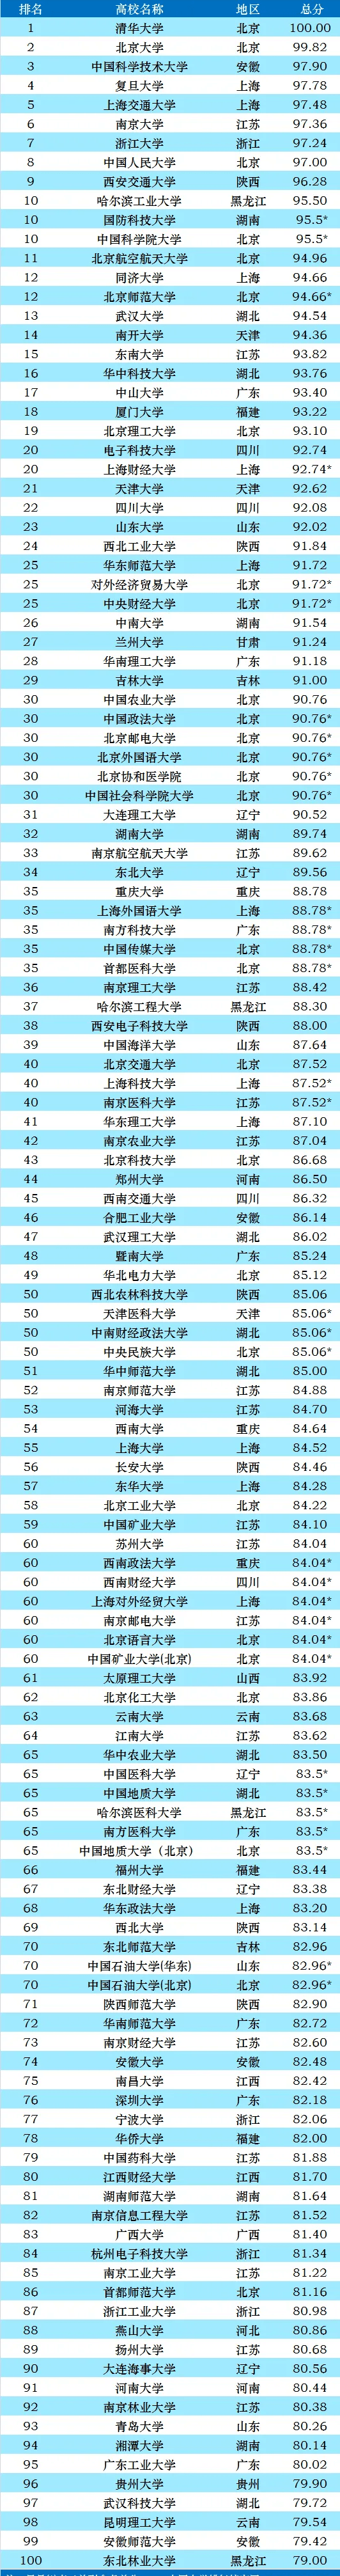 2021中国大学排名100强榜单!中科大,复旦,分列三